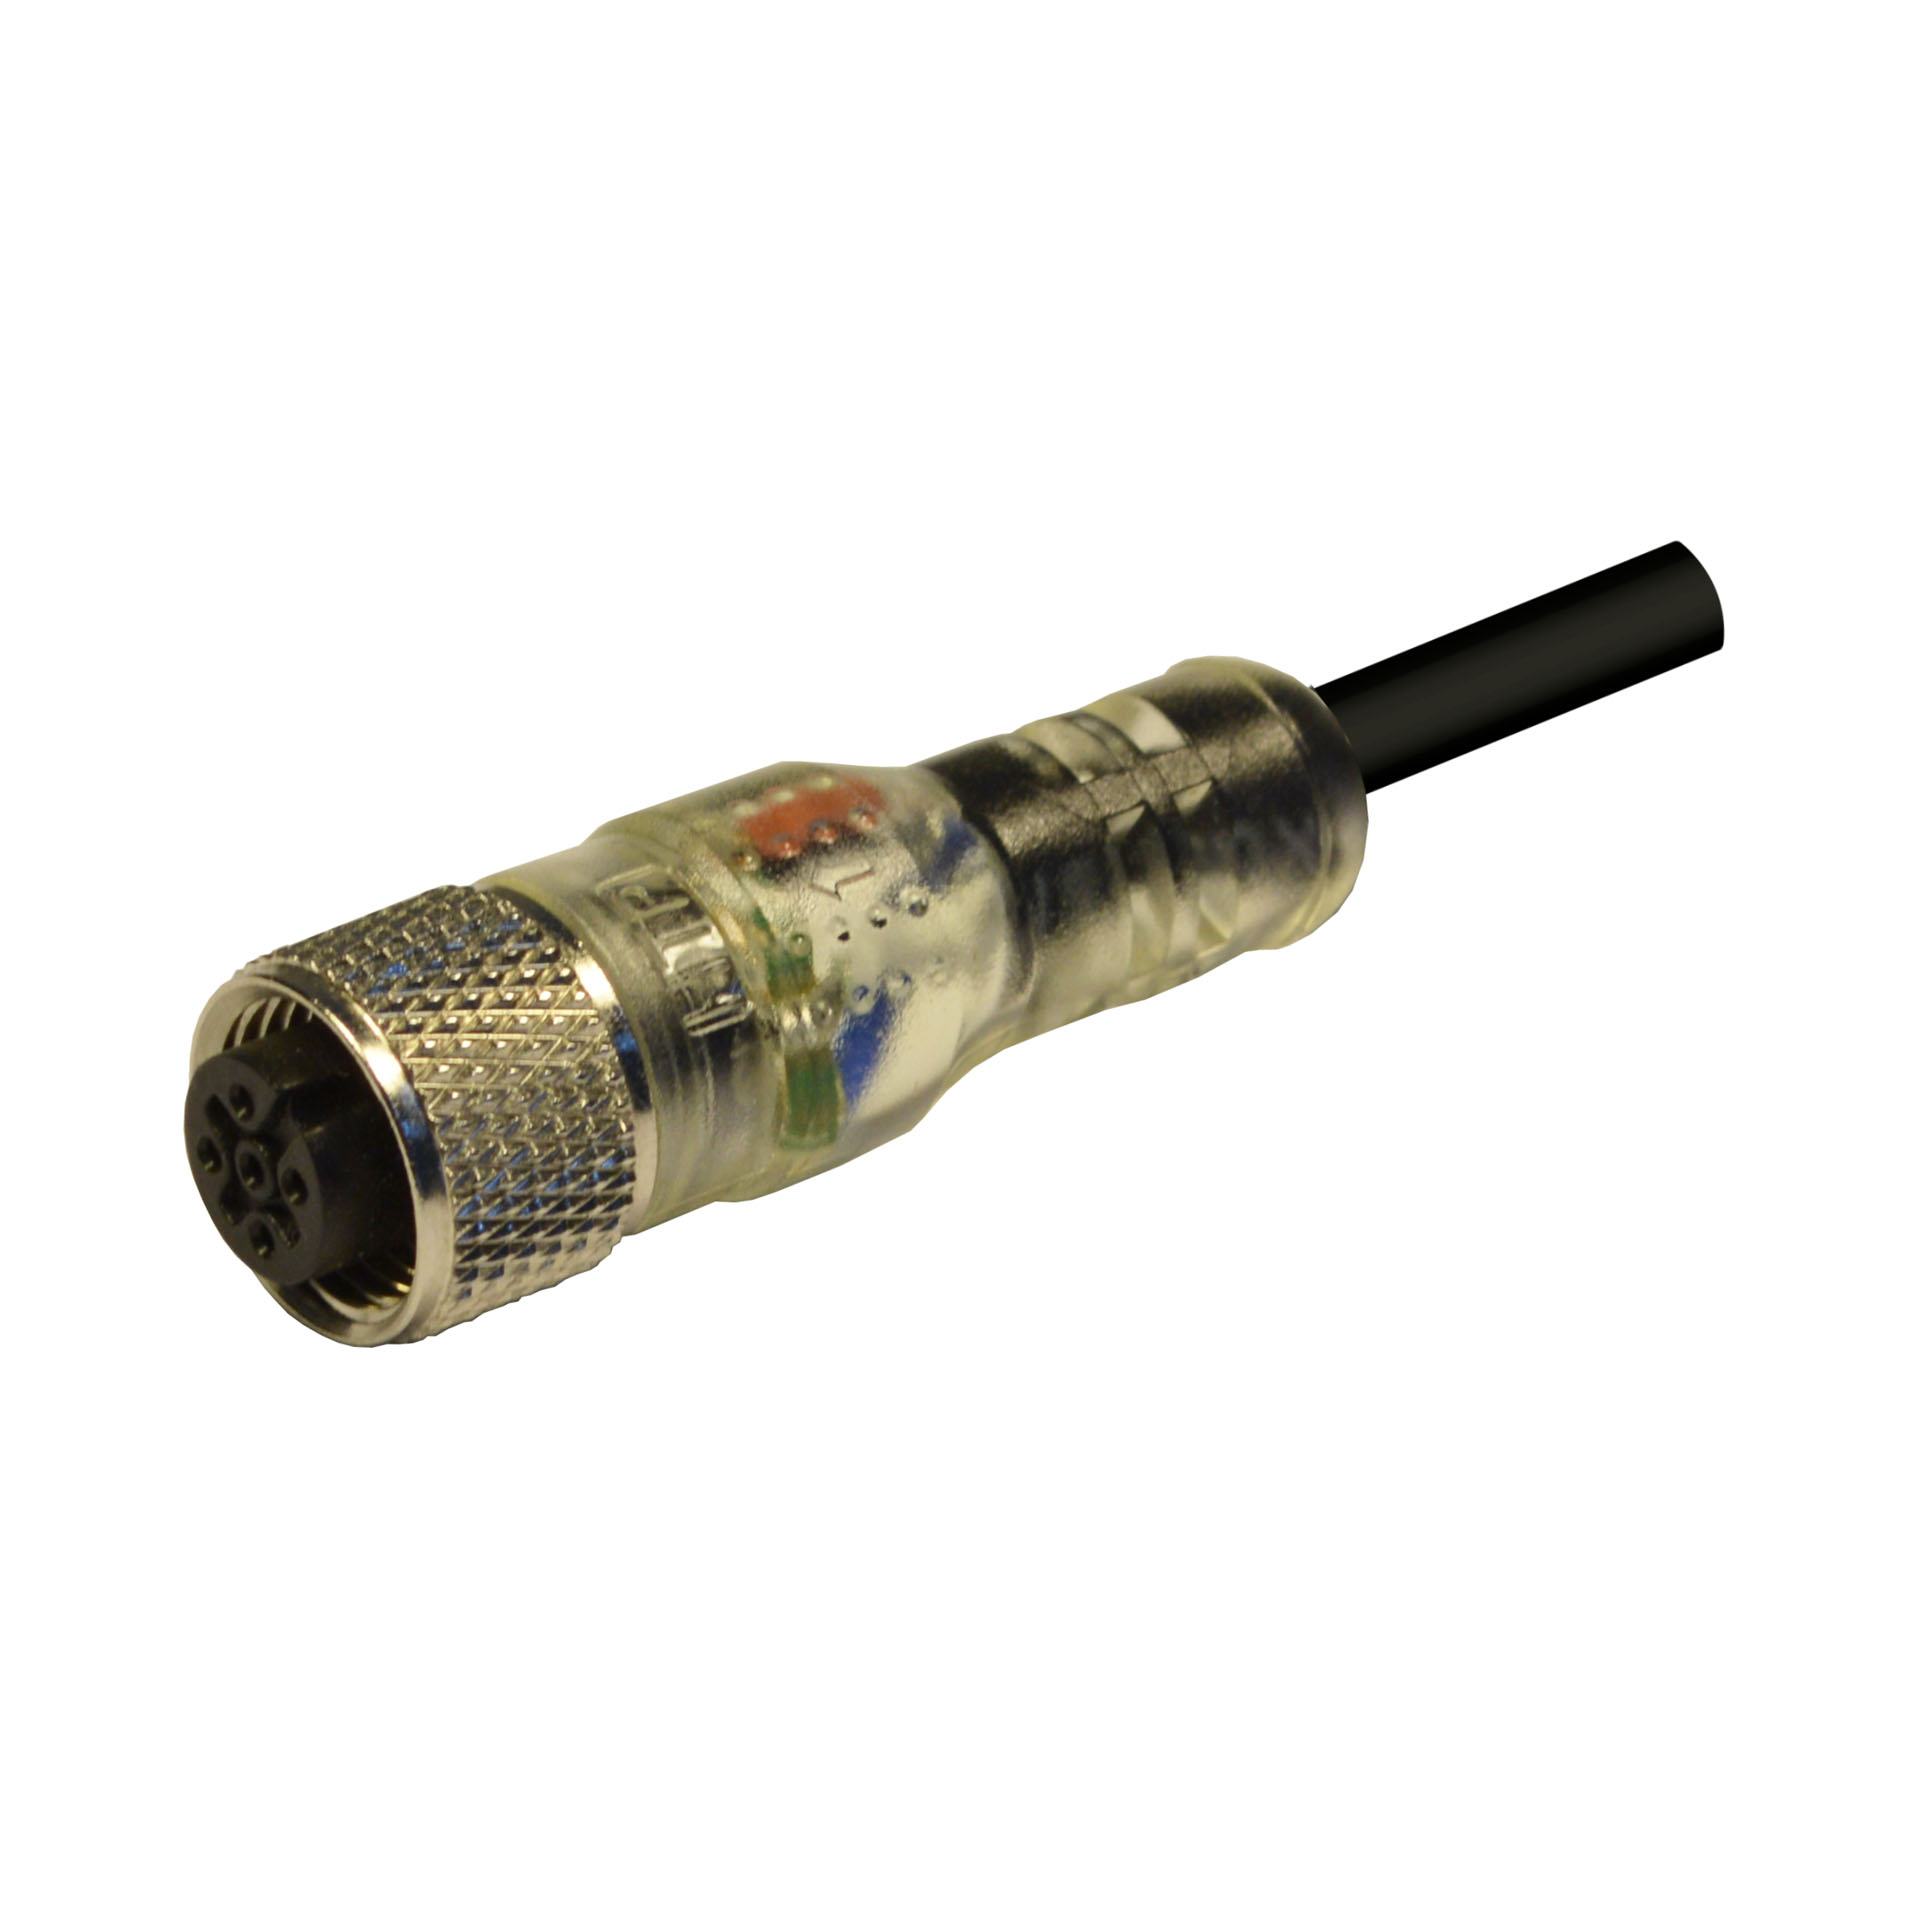 M12 fem conn - 180° - 4pol - 2 LED NPN - 5 m . Cable type PVC/PVC CEI2022 4x0,34, col.black.